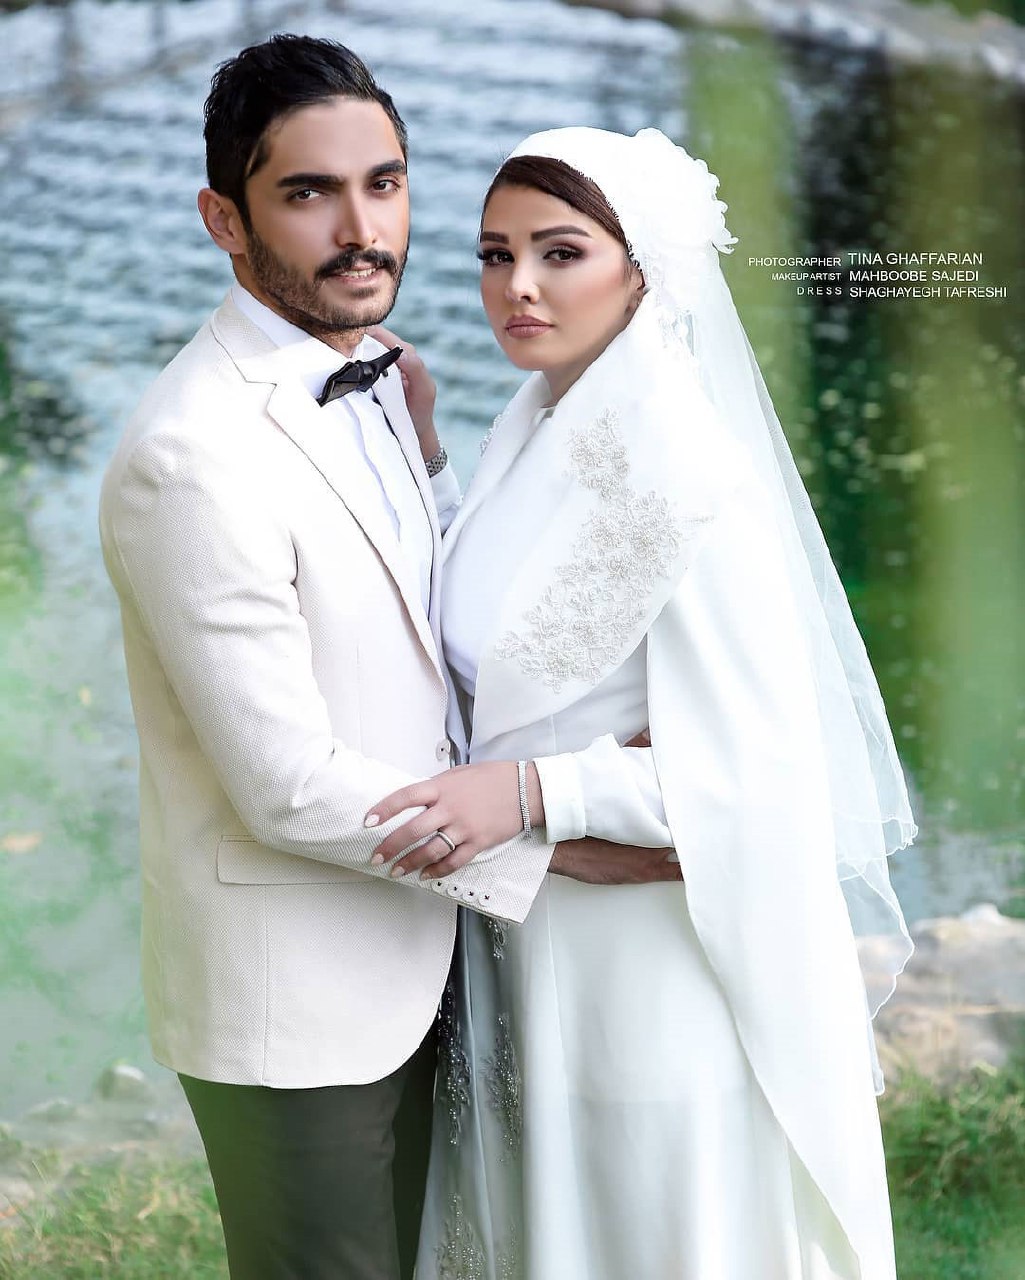 عکس: خانم بازیگر با لباس عروس در کنار همسرش